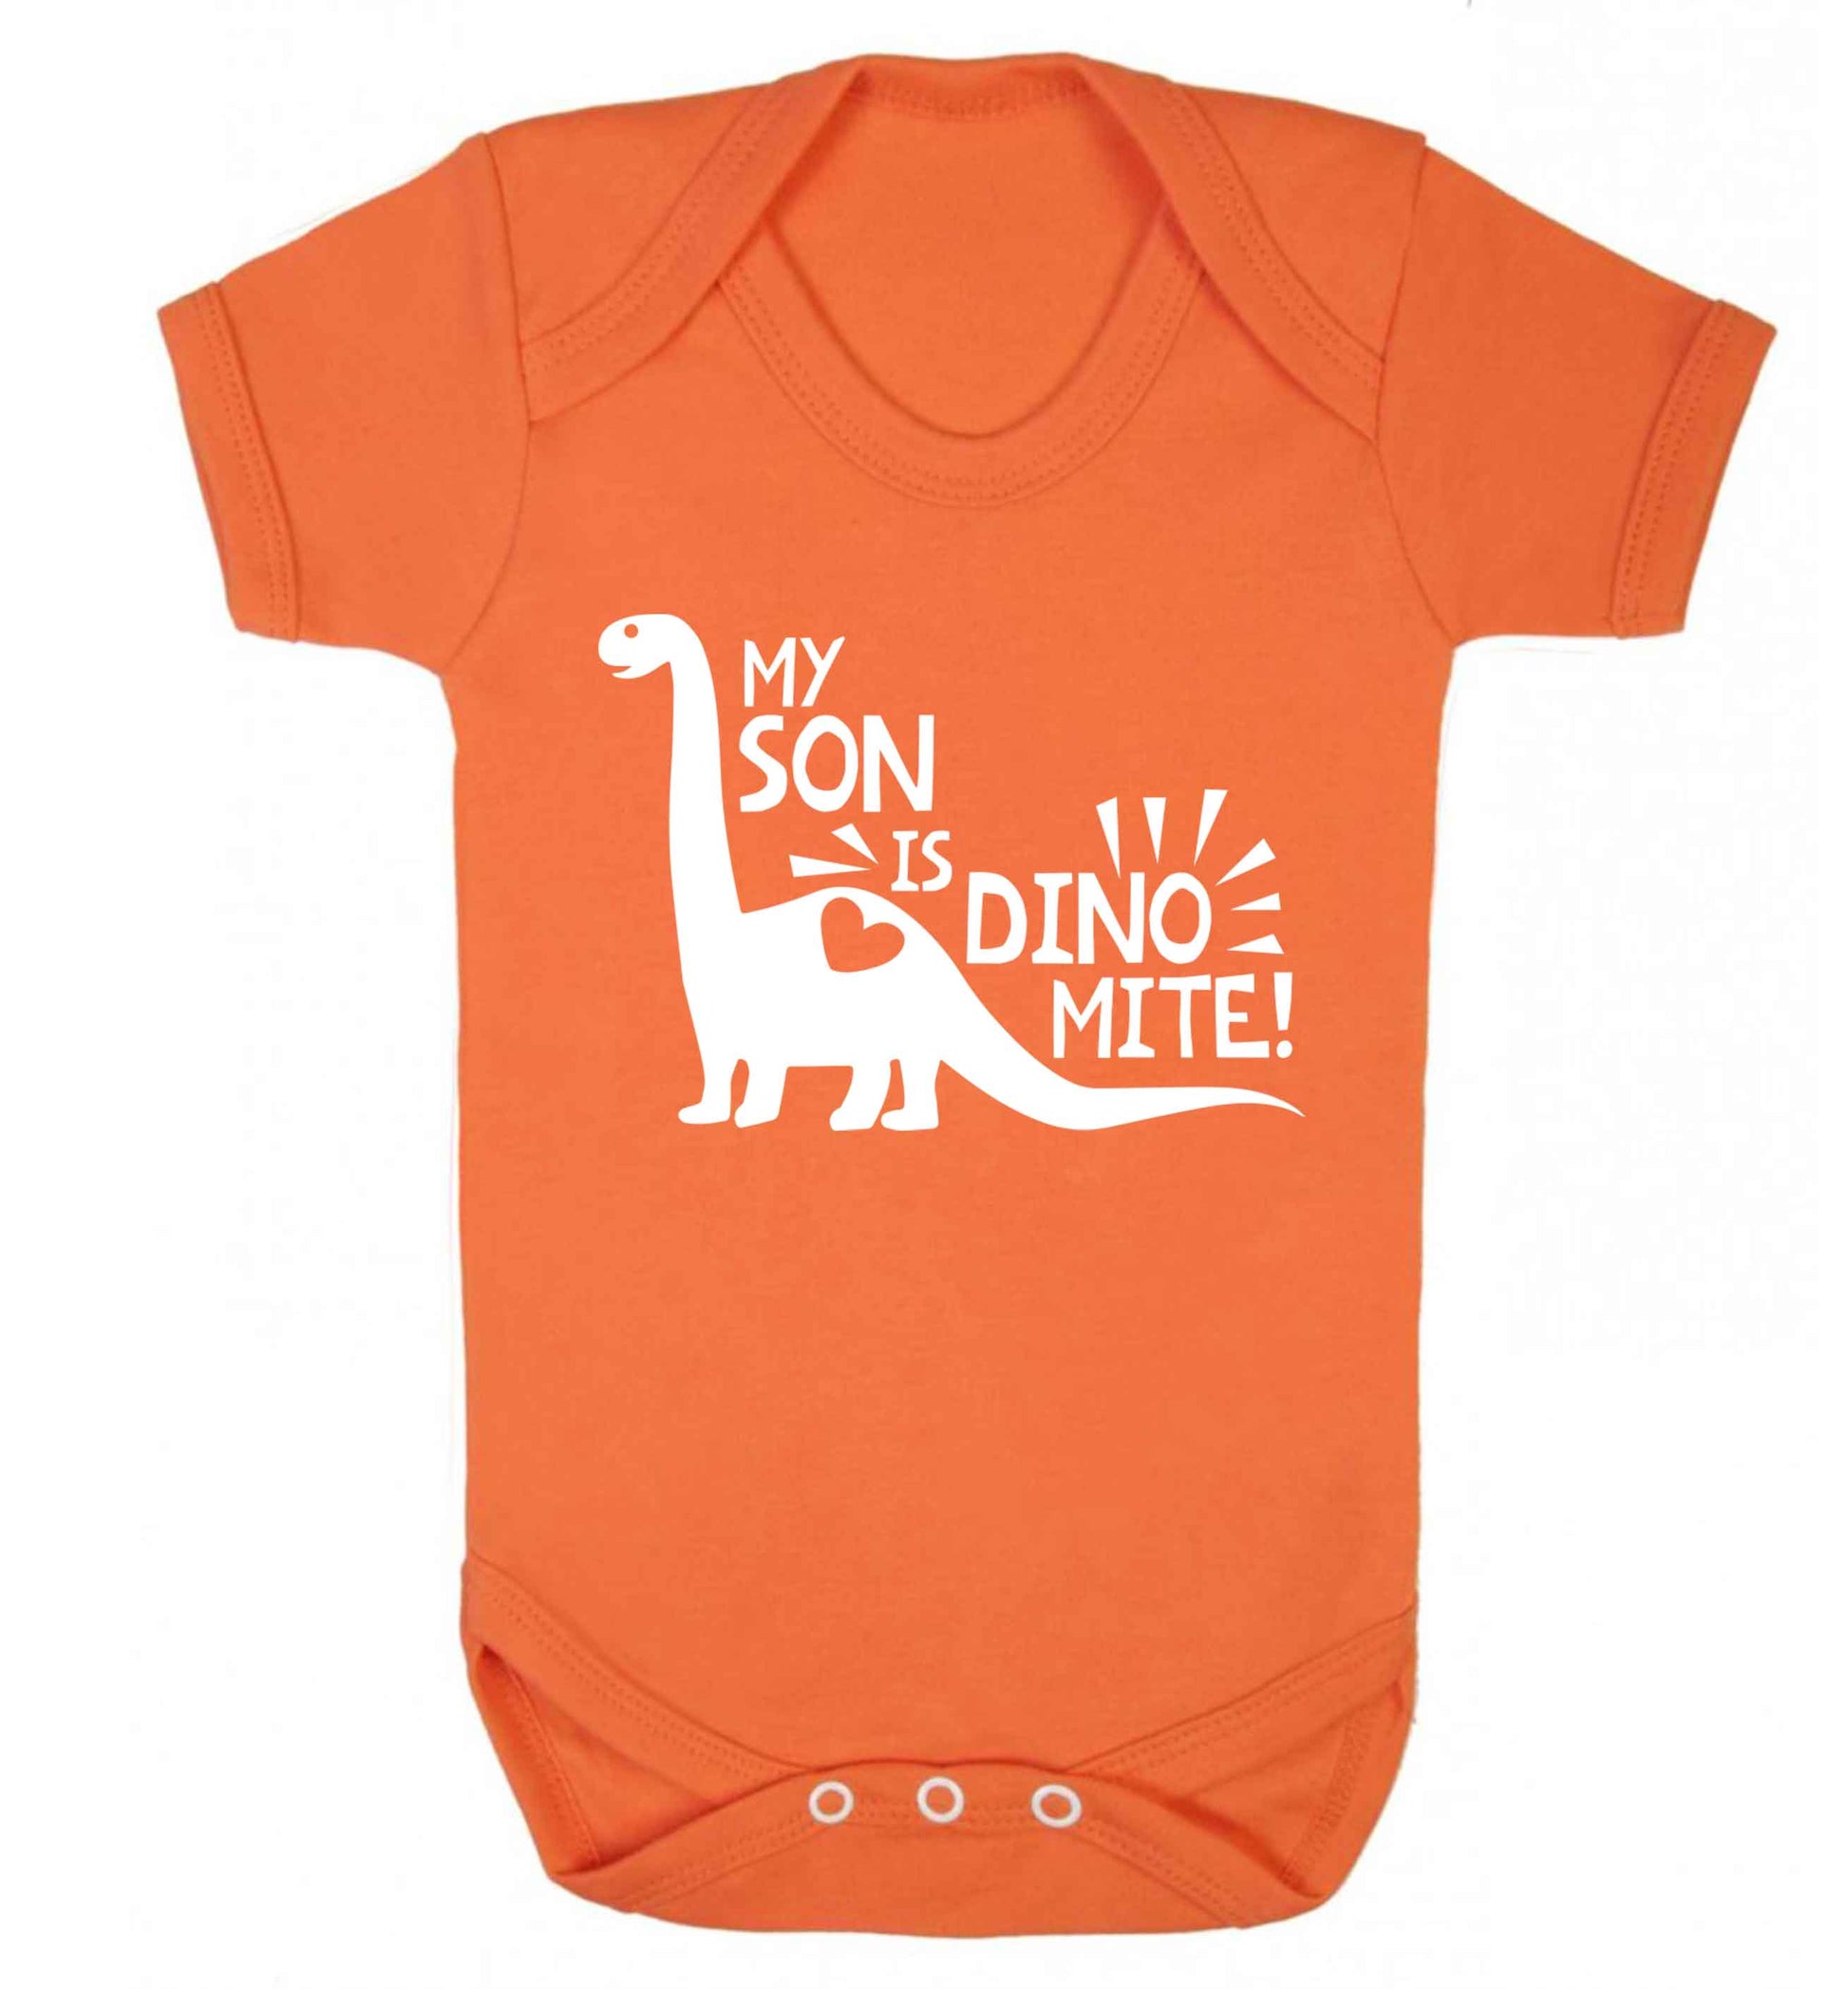 My son is dinomite! Baby Vest orange 18-24 months